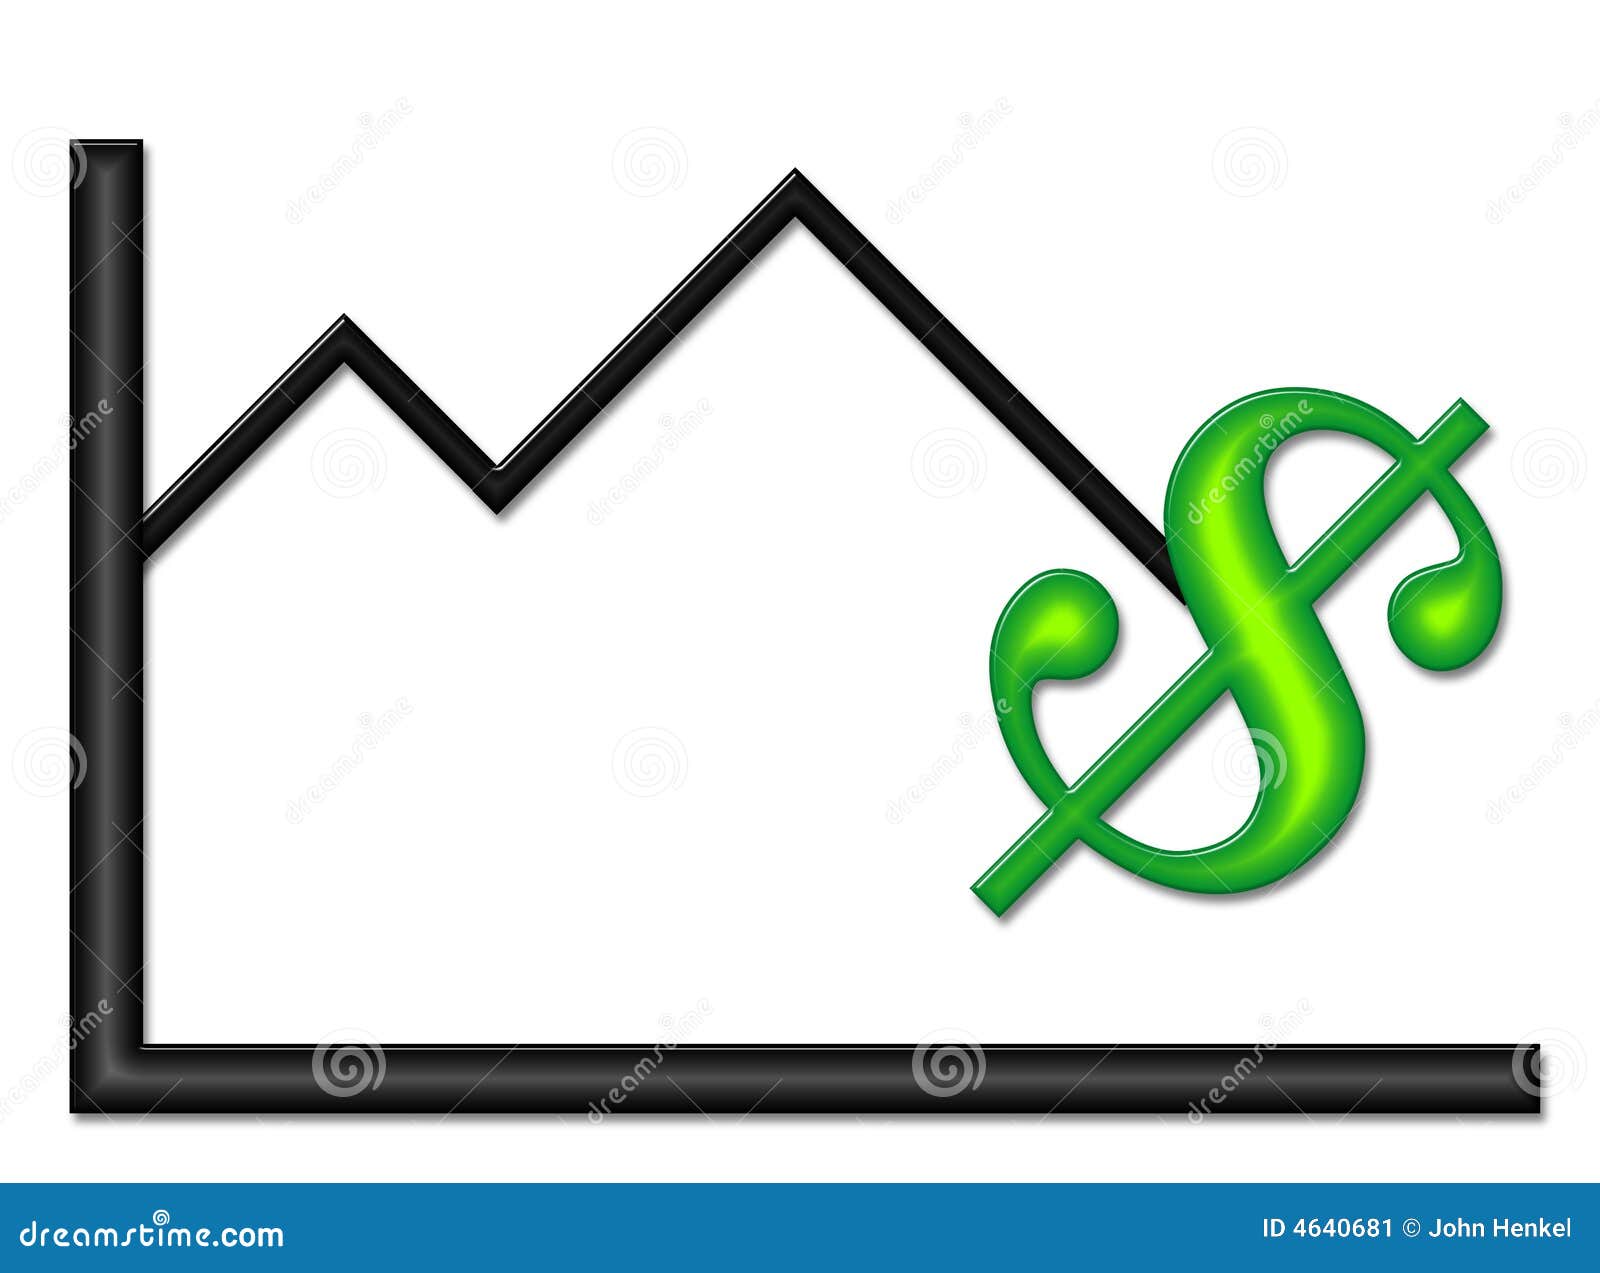 Zwarte Grafiek met het Groene Symbool van het Geld. Zwarte grafiek en groen geldsymbool op een benedenwaartse tendens.